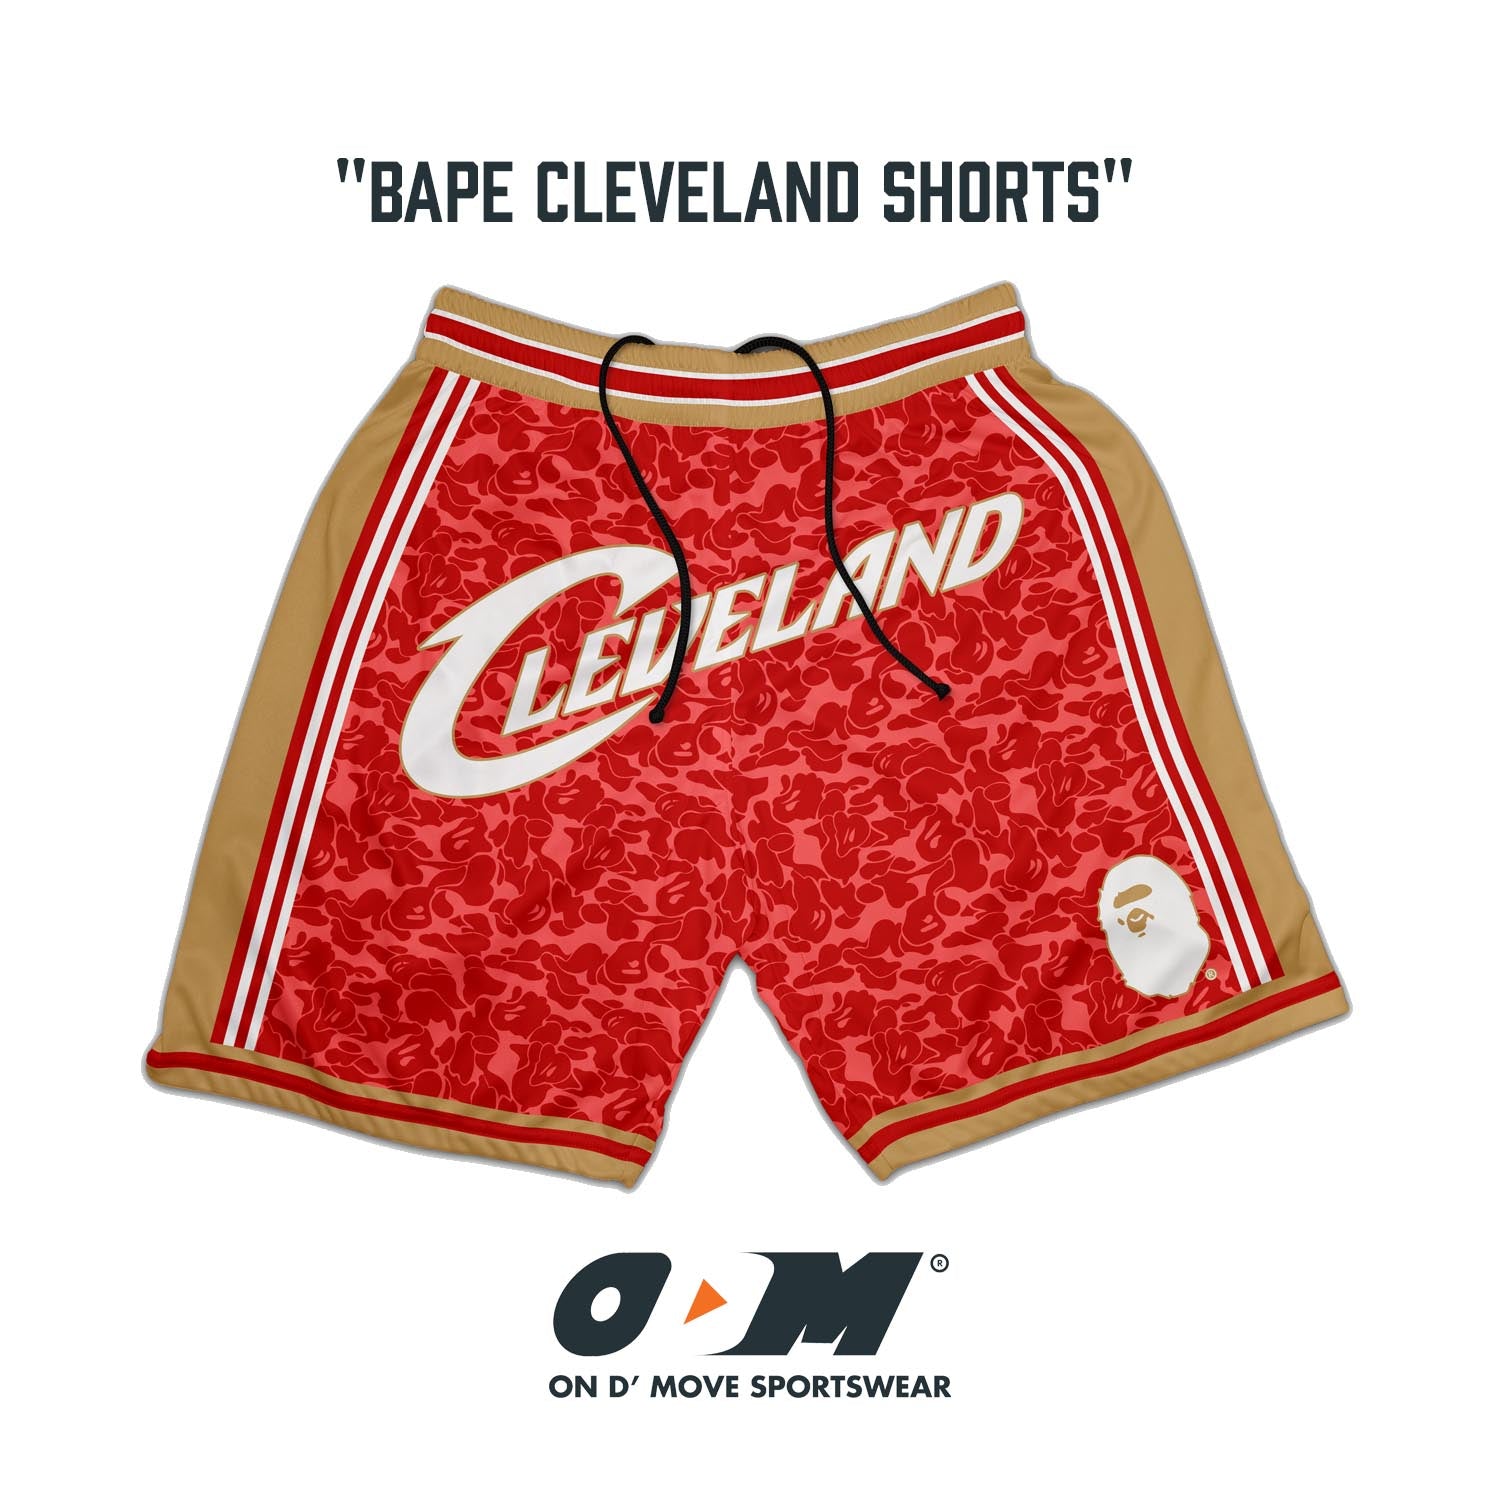 BAPE Cleveland Shorts